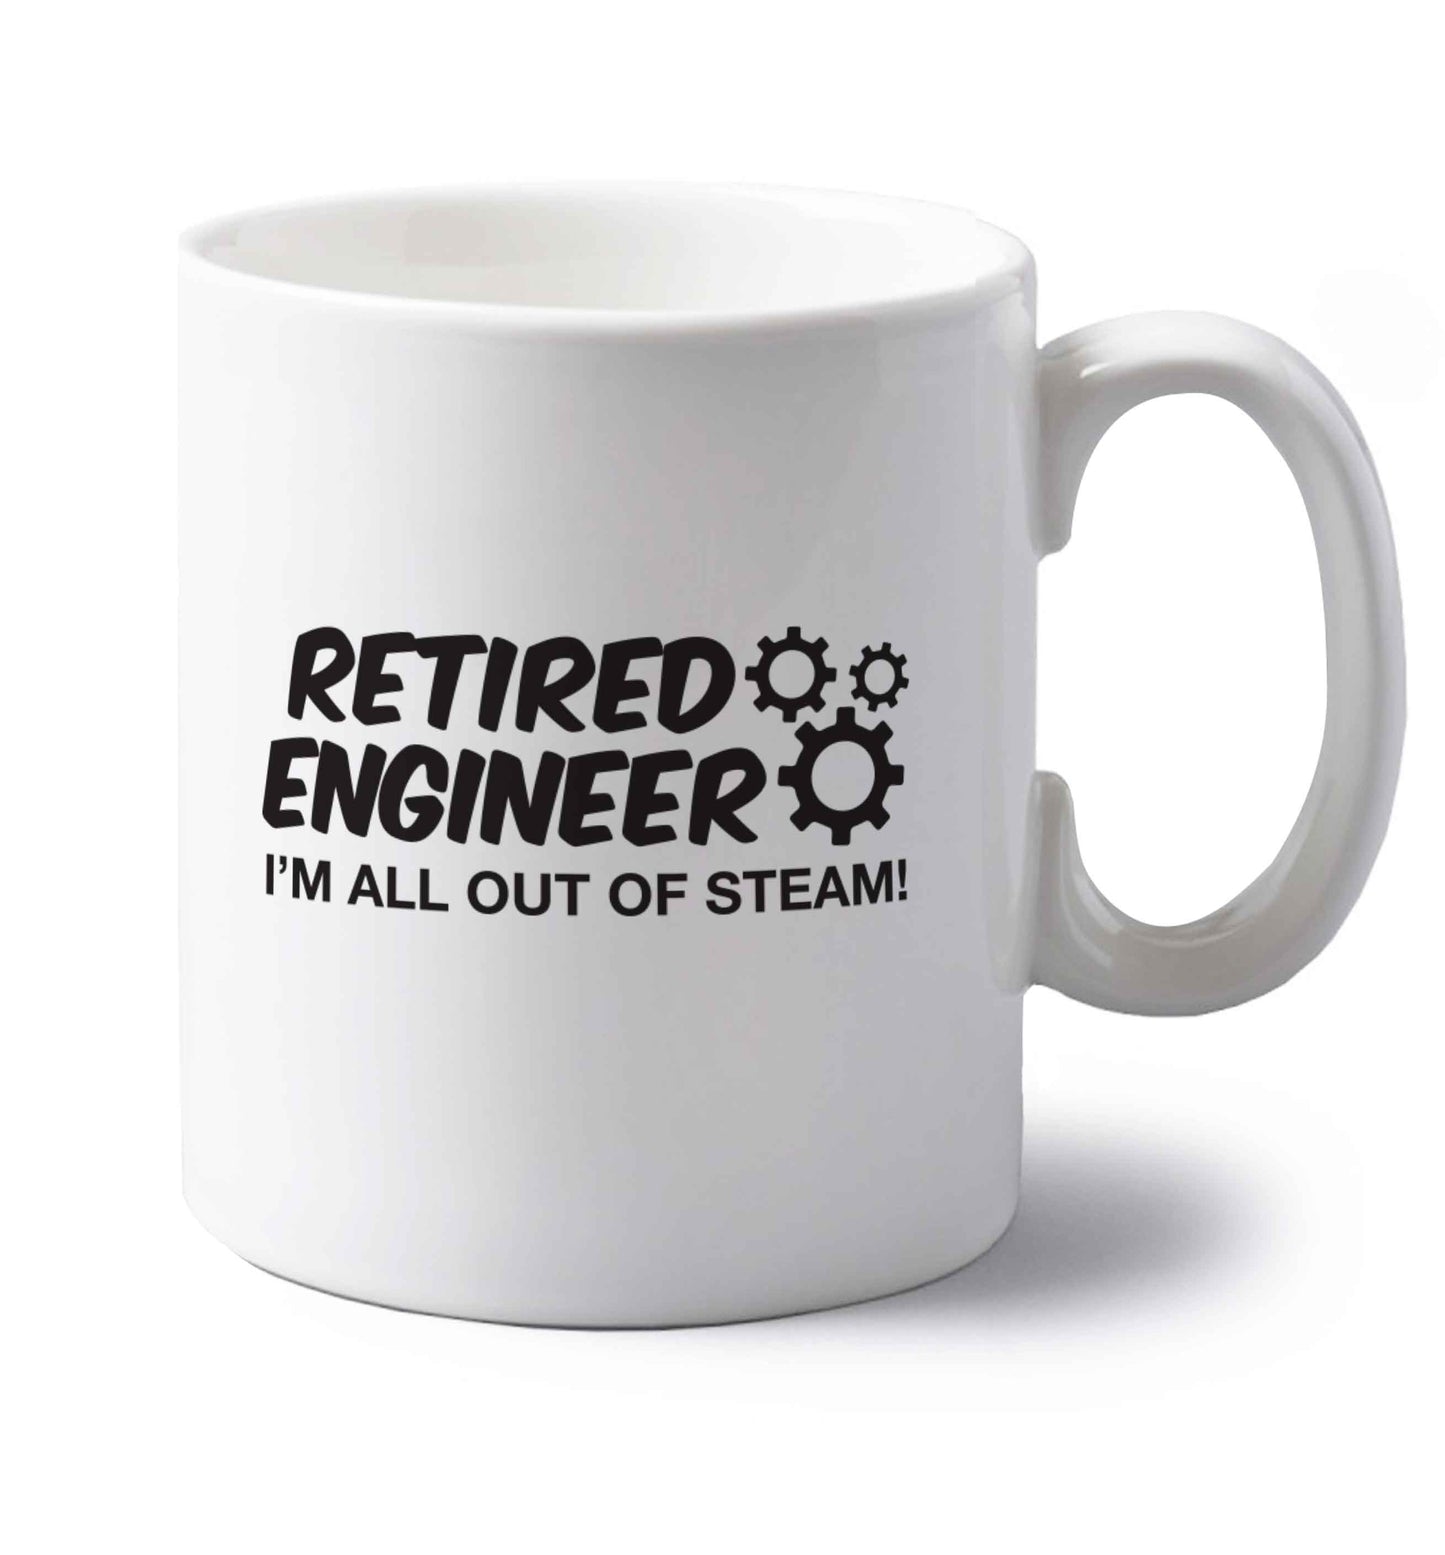 Retired engineer I'm all out of steam left handed white ceramic mug 